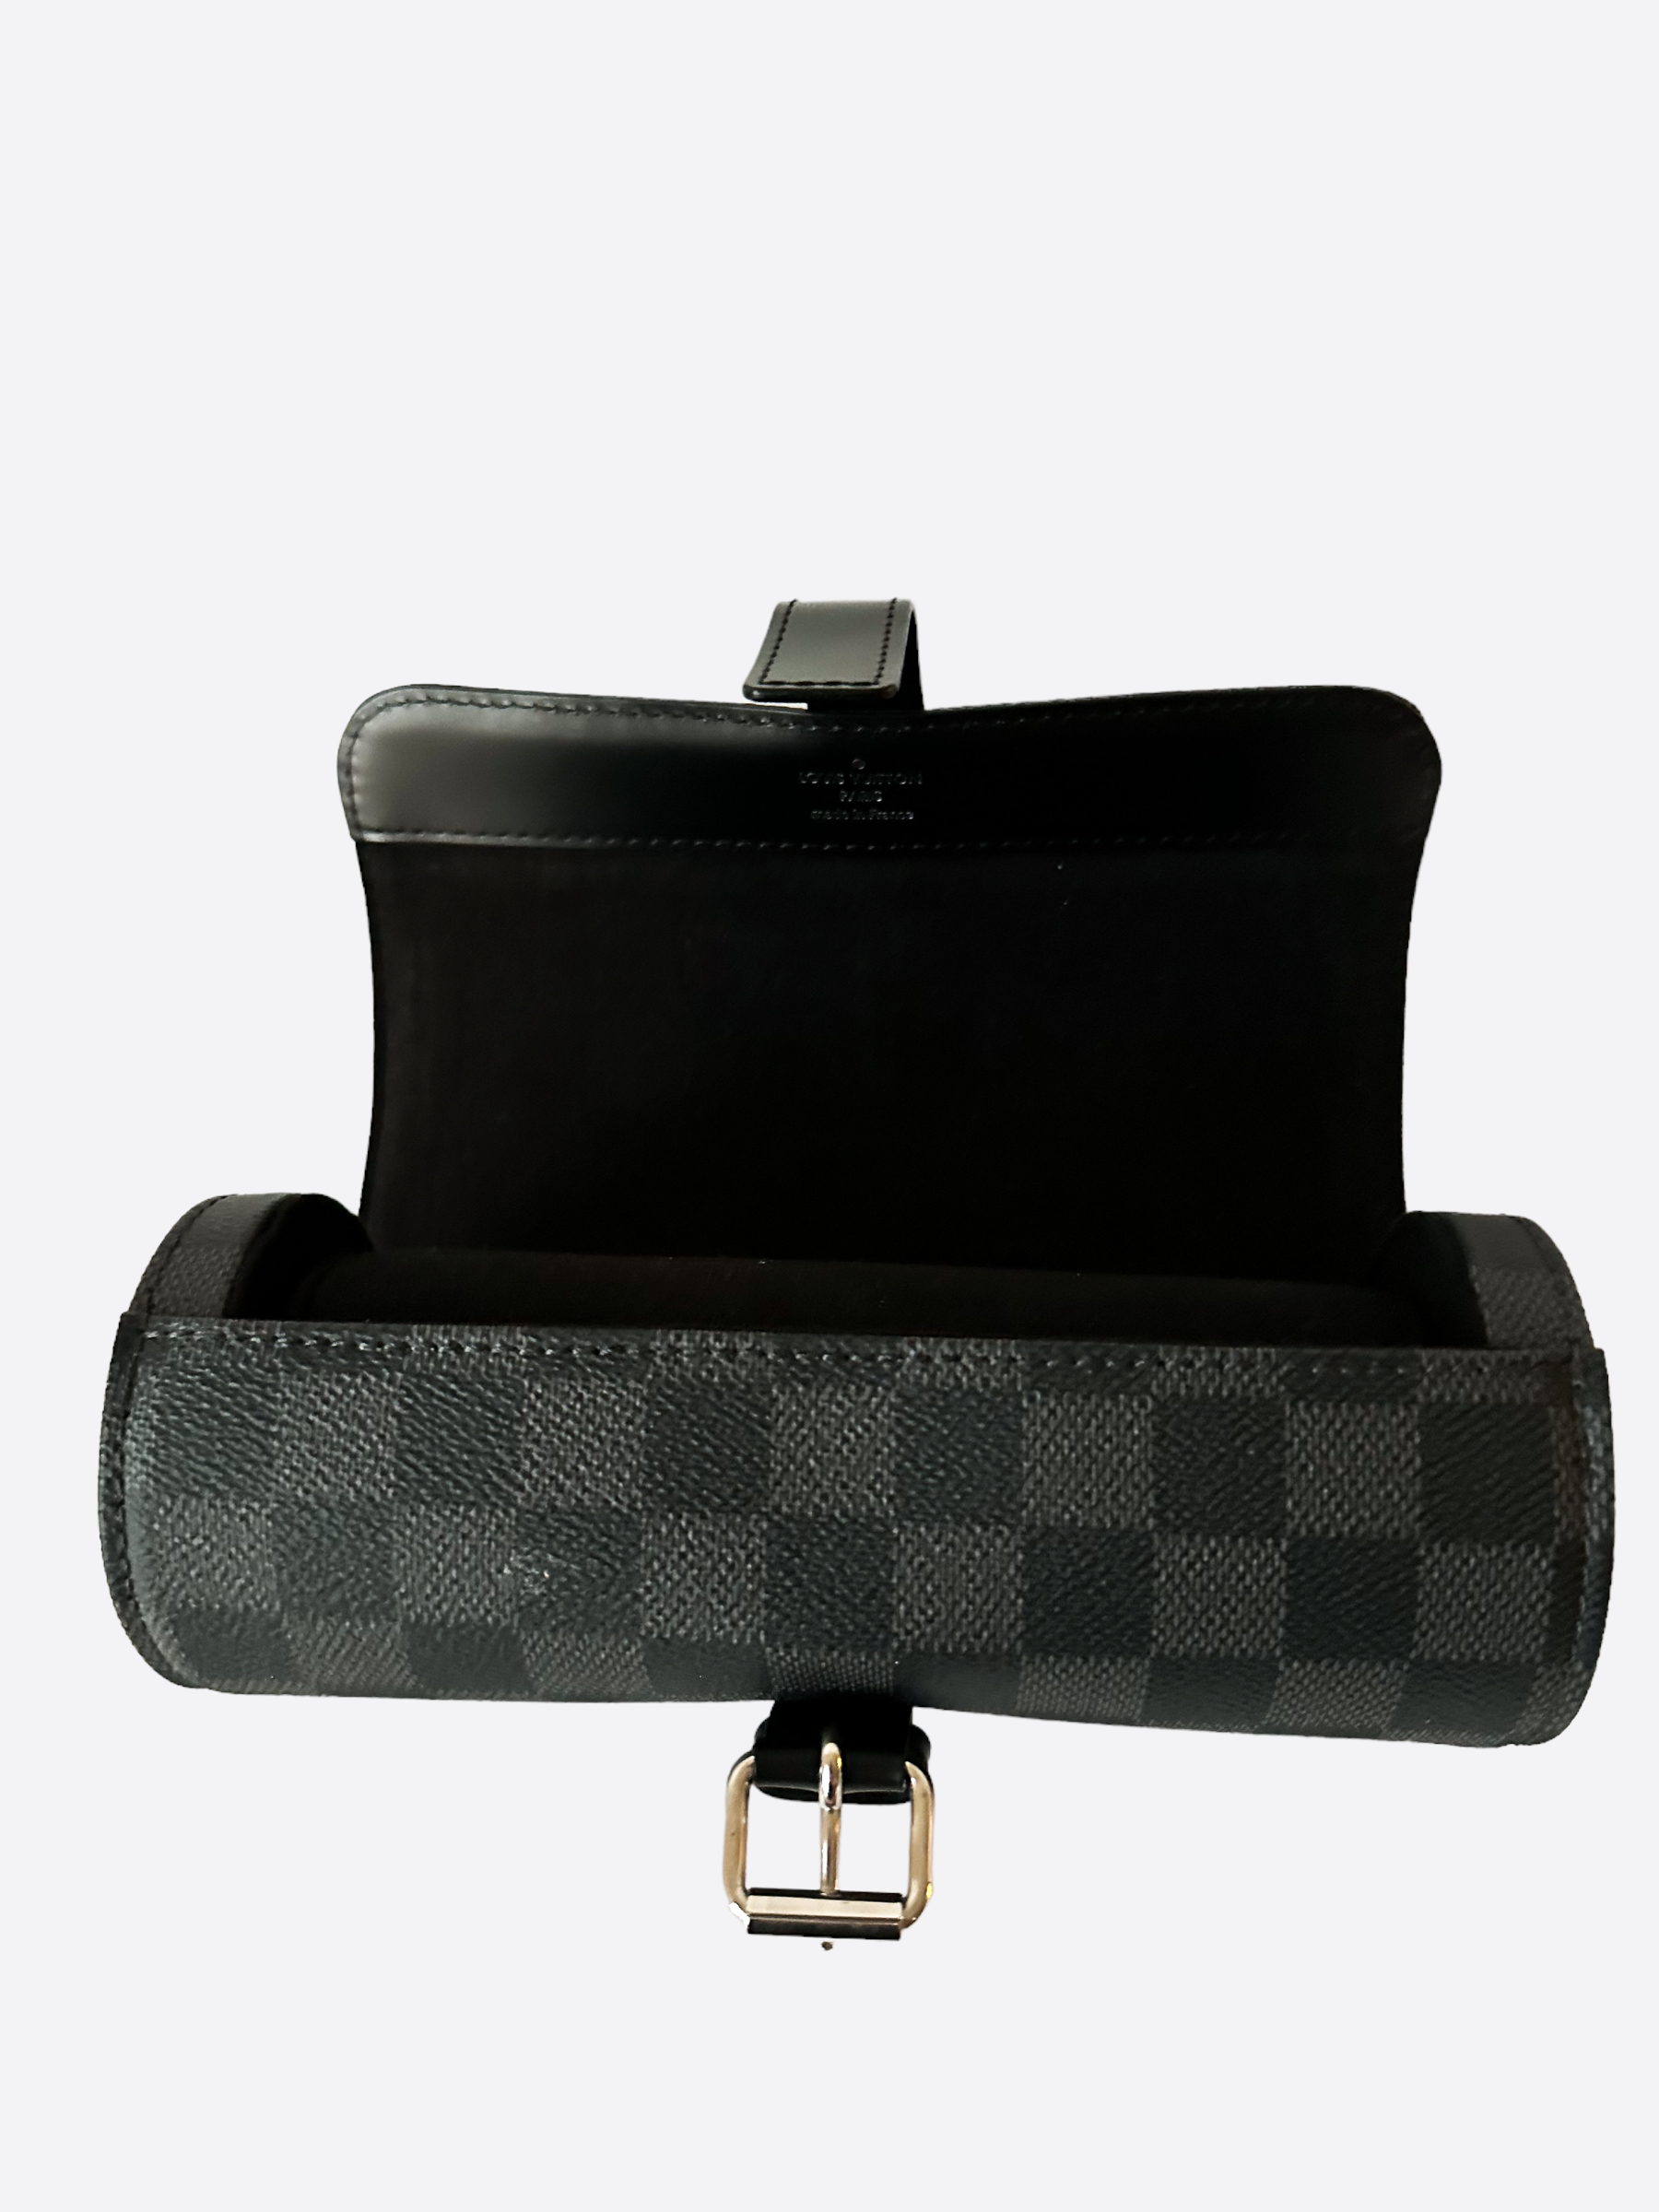 Louis Vuitton Damier Graphite Watch Roll Case – Savonches